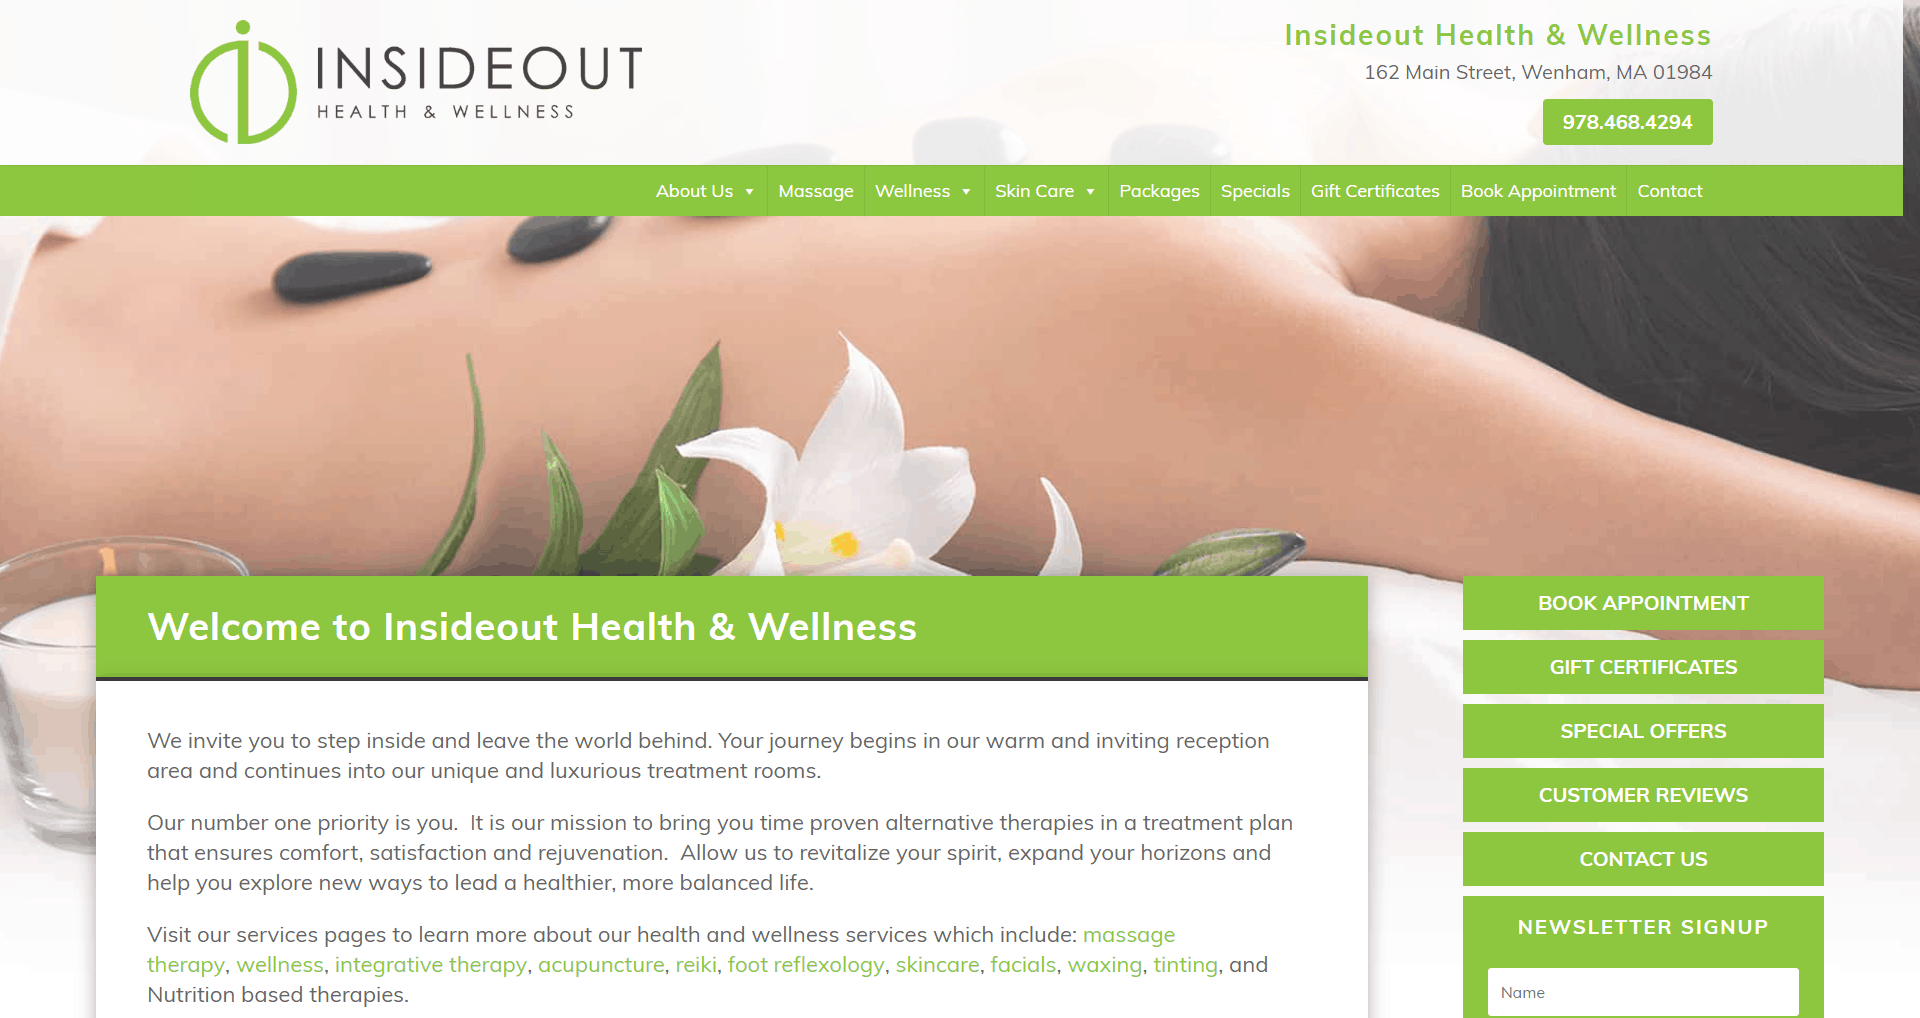 Website Re-Design Insideout Health & Wellness